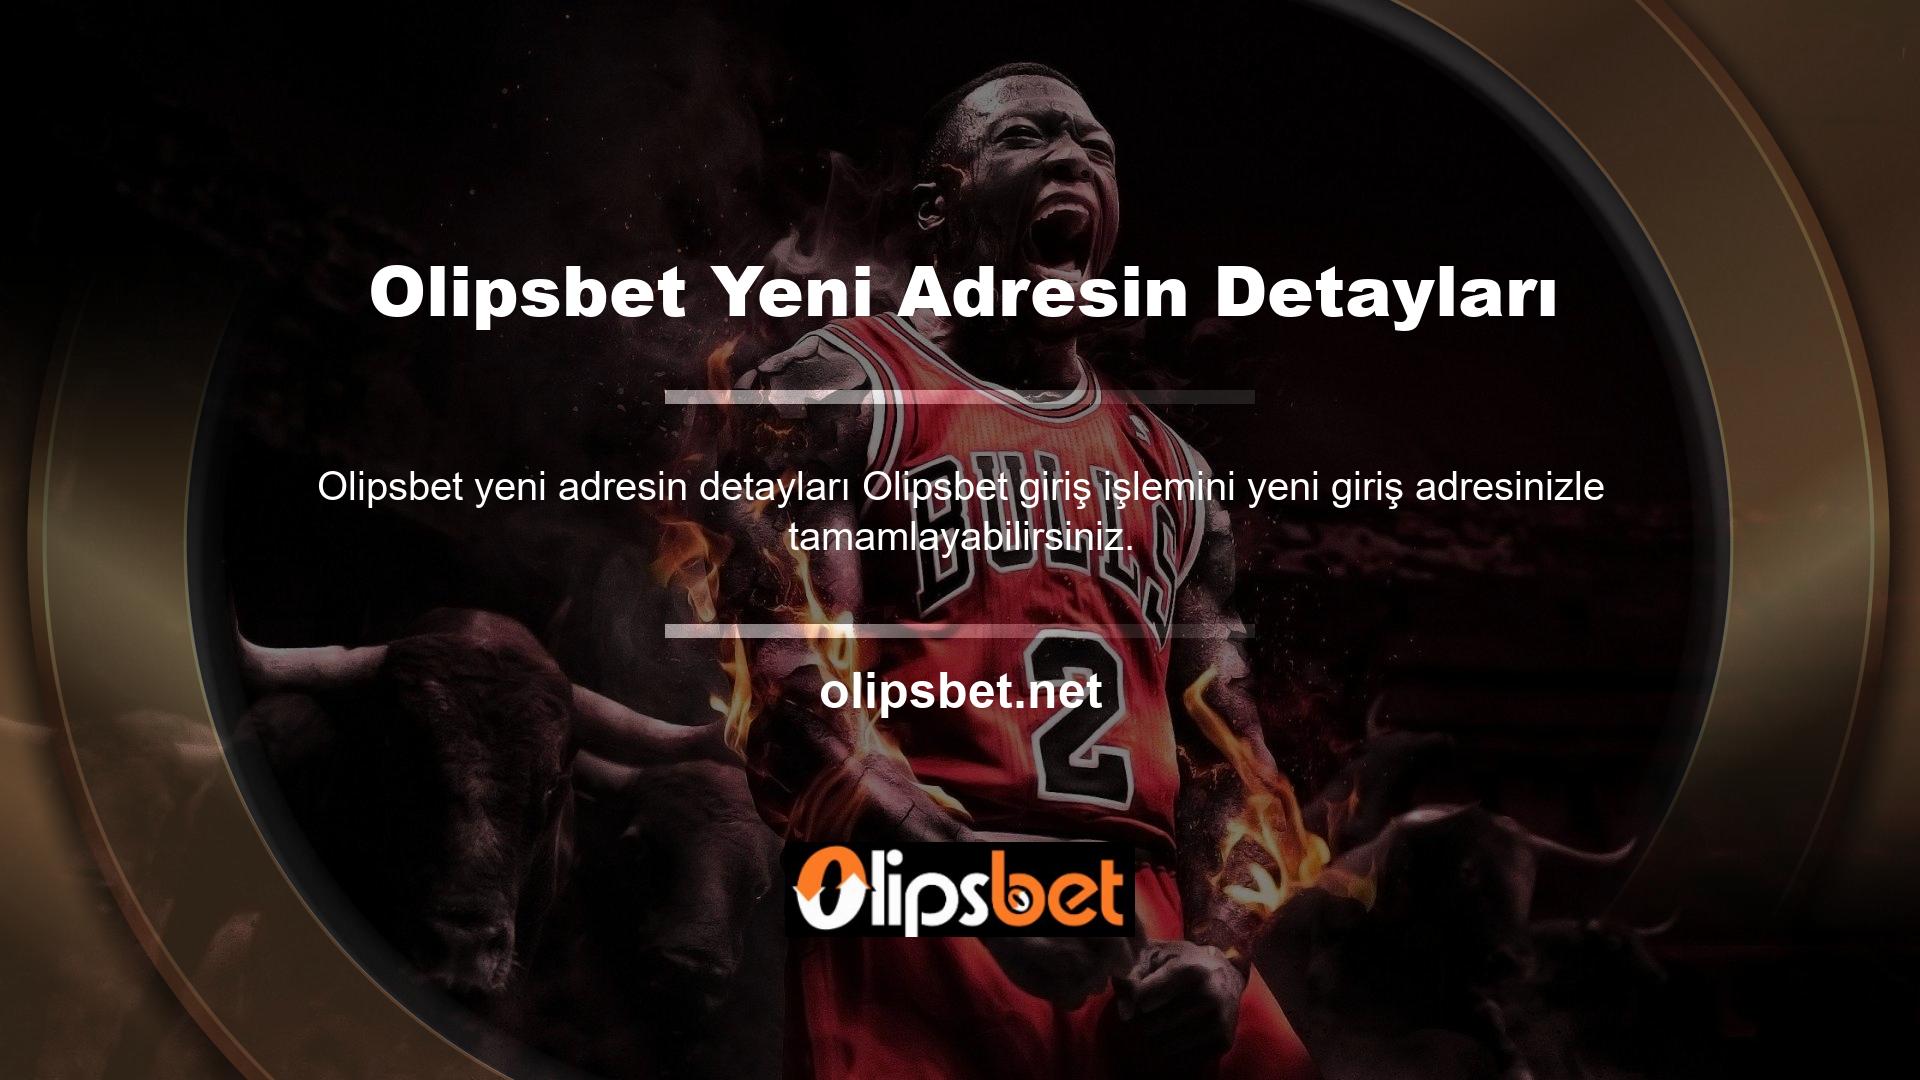 Doğru görünmeyen sayfanın içeriğinin yeni adresi Olipsbet olarak değiştirildiği ve aslında Türkiye pazarında faaliyet göstermeye devam ettiği ortaya çıktı